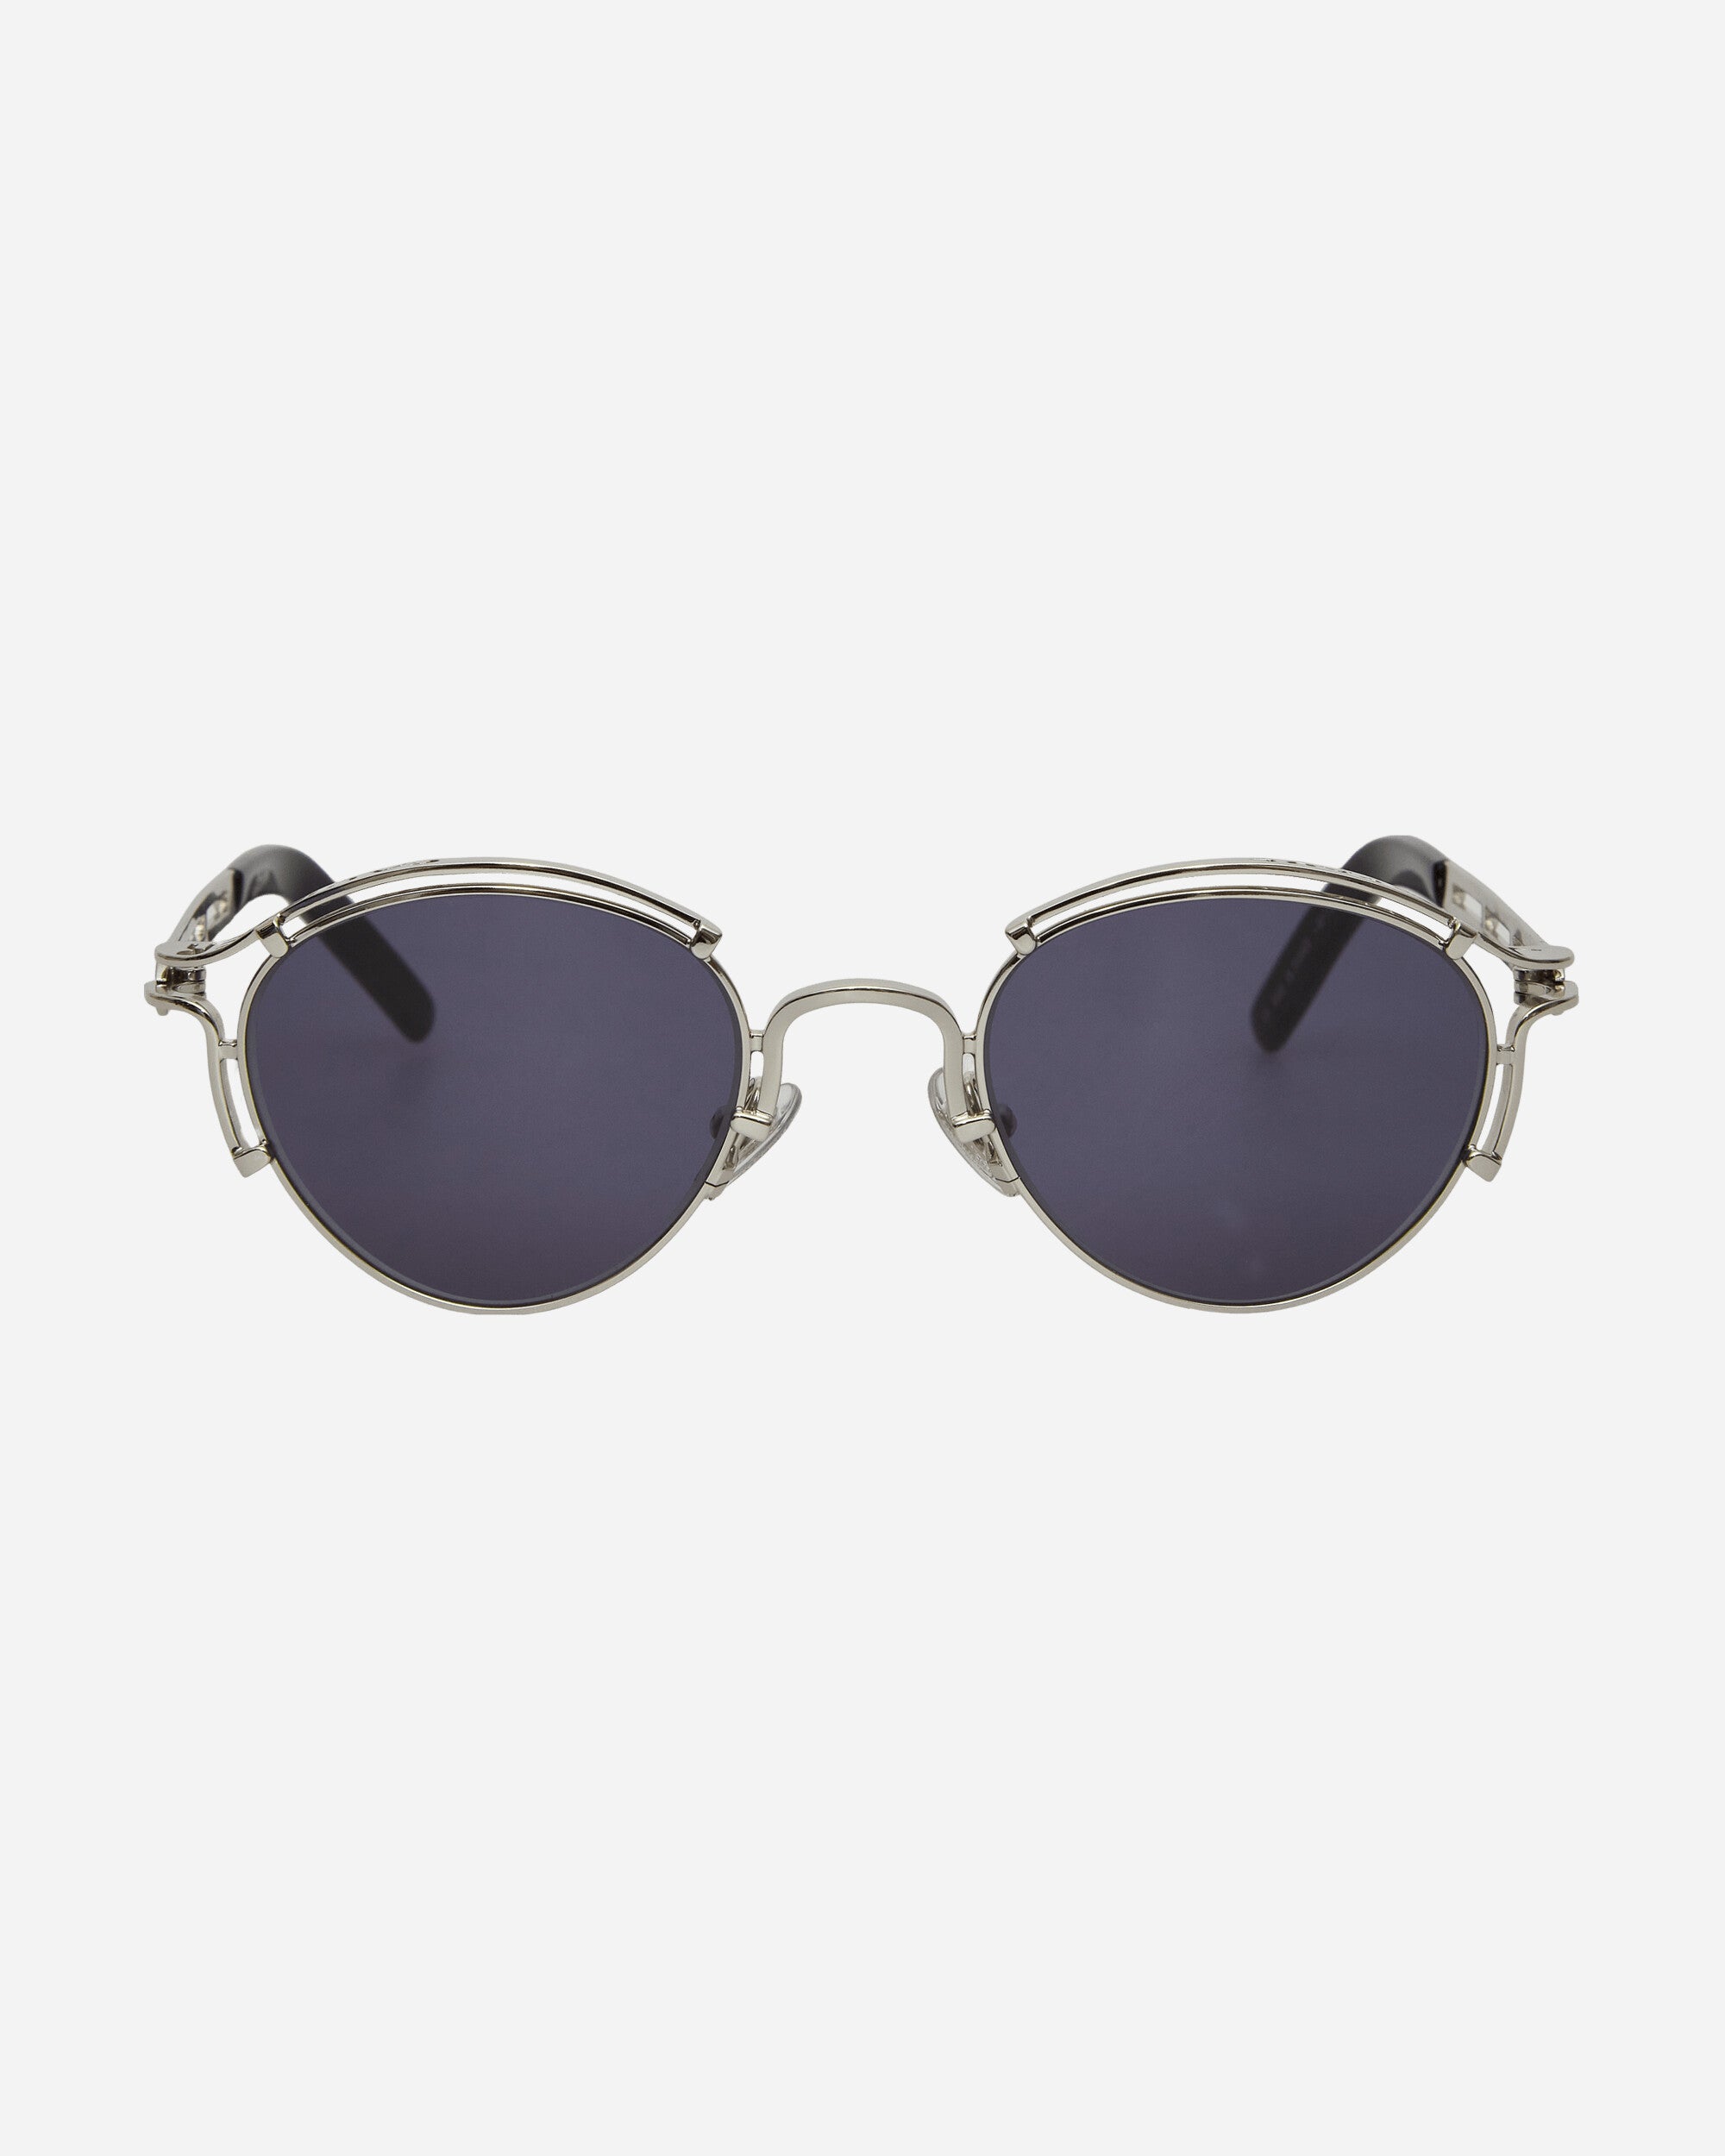 Jean Paul Gaultier Wmns Lunettes Sourcil Silver Eyewear Sunglasses LU009-X056 91